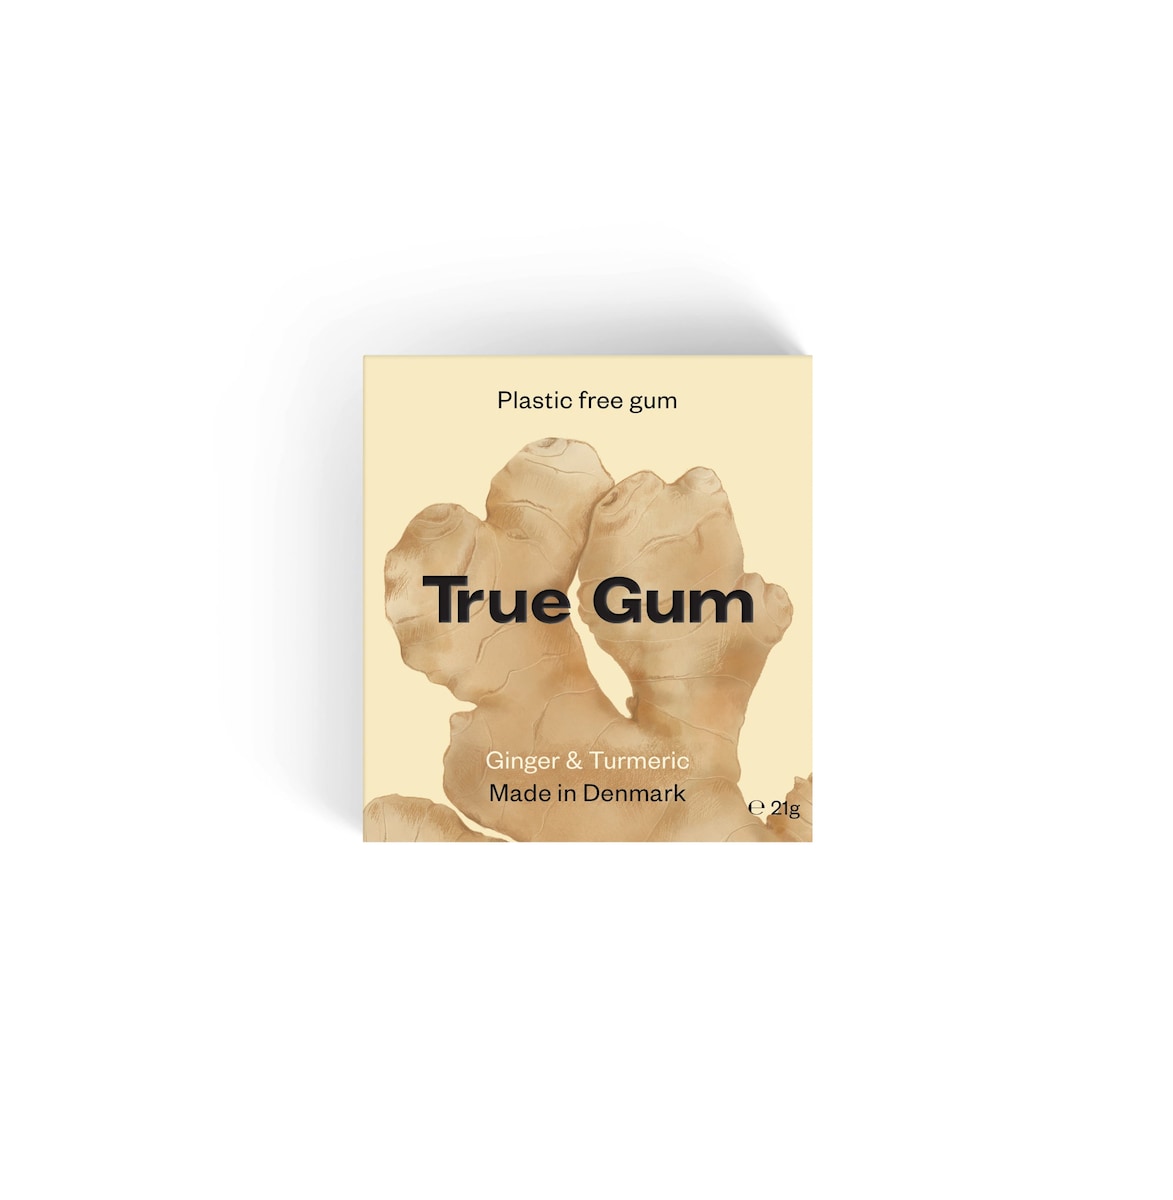 True Gum Ginger & Turmeric Gum 21g